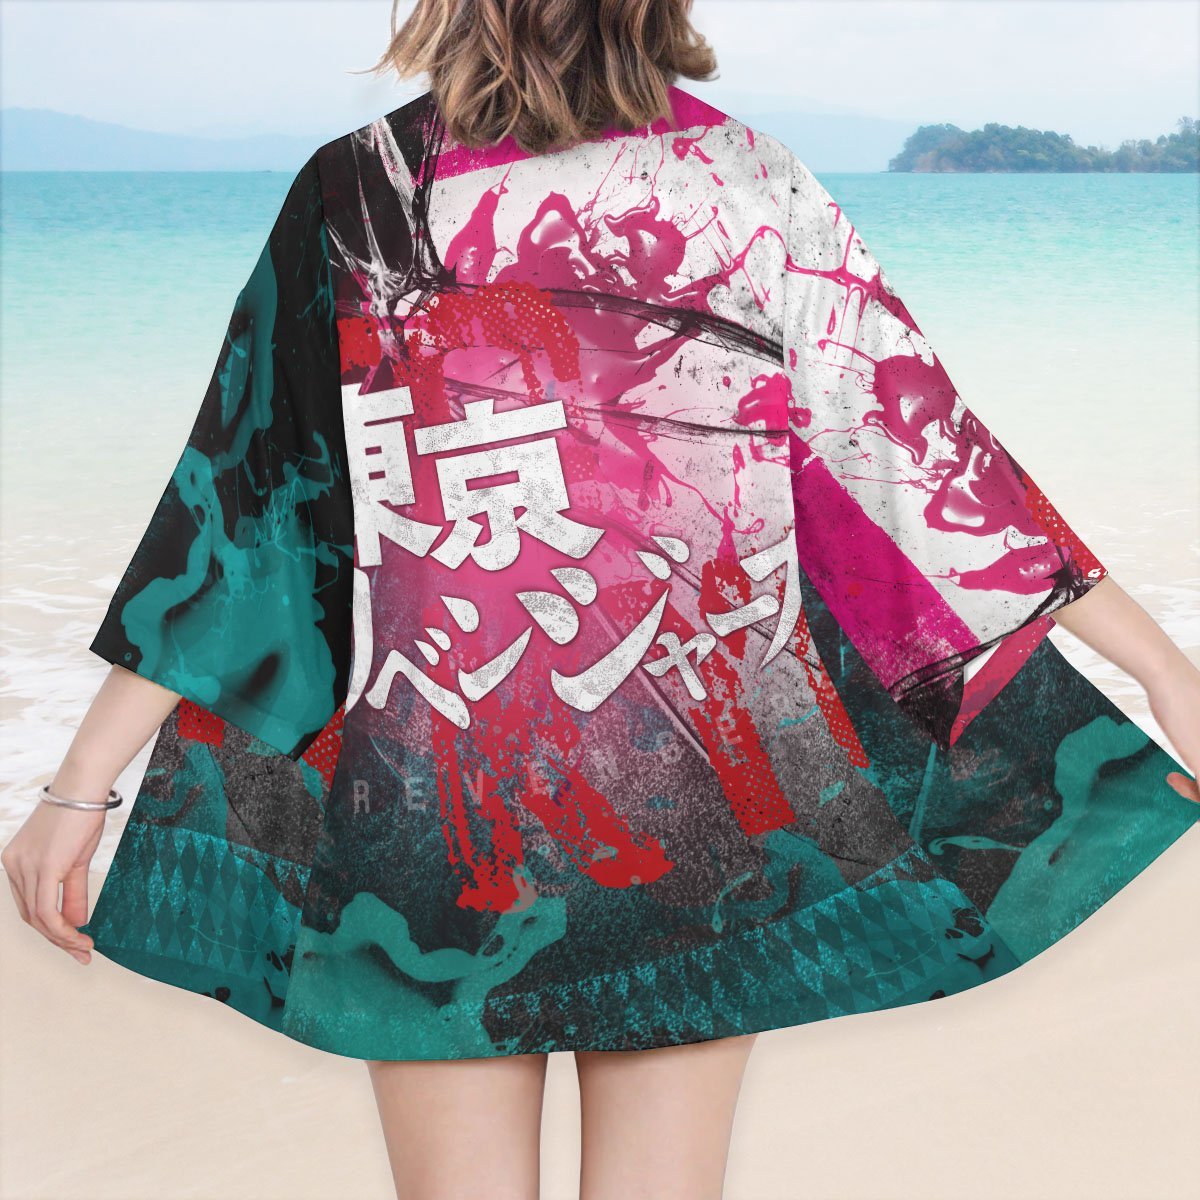 3XL Official Anime Kimono Merch